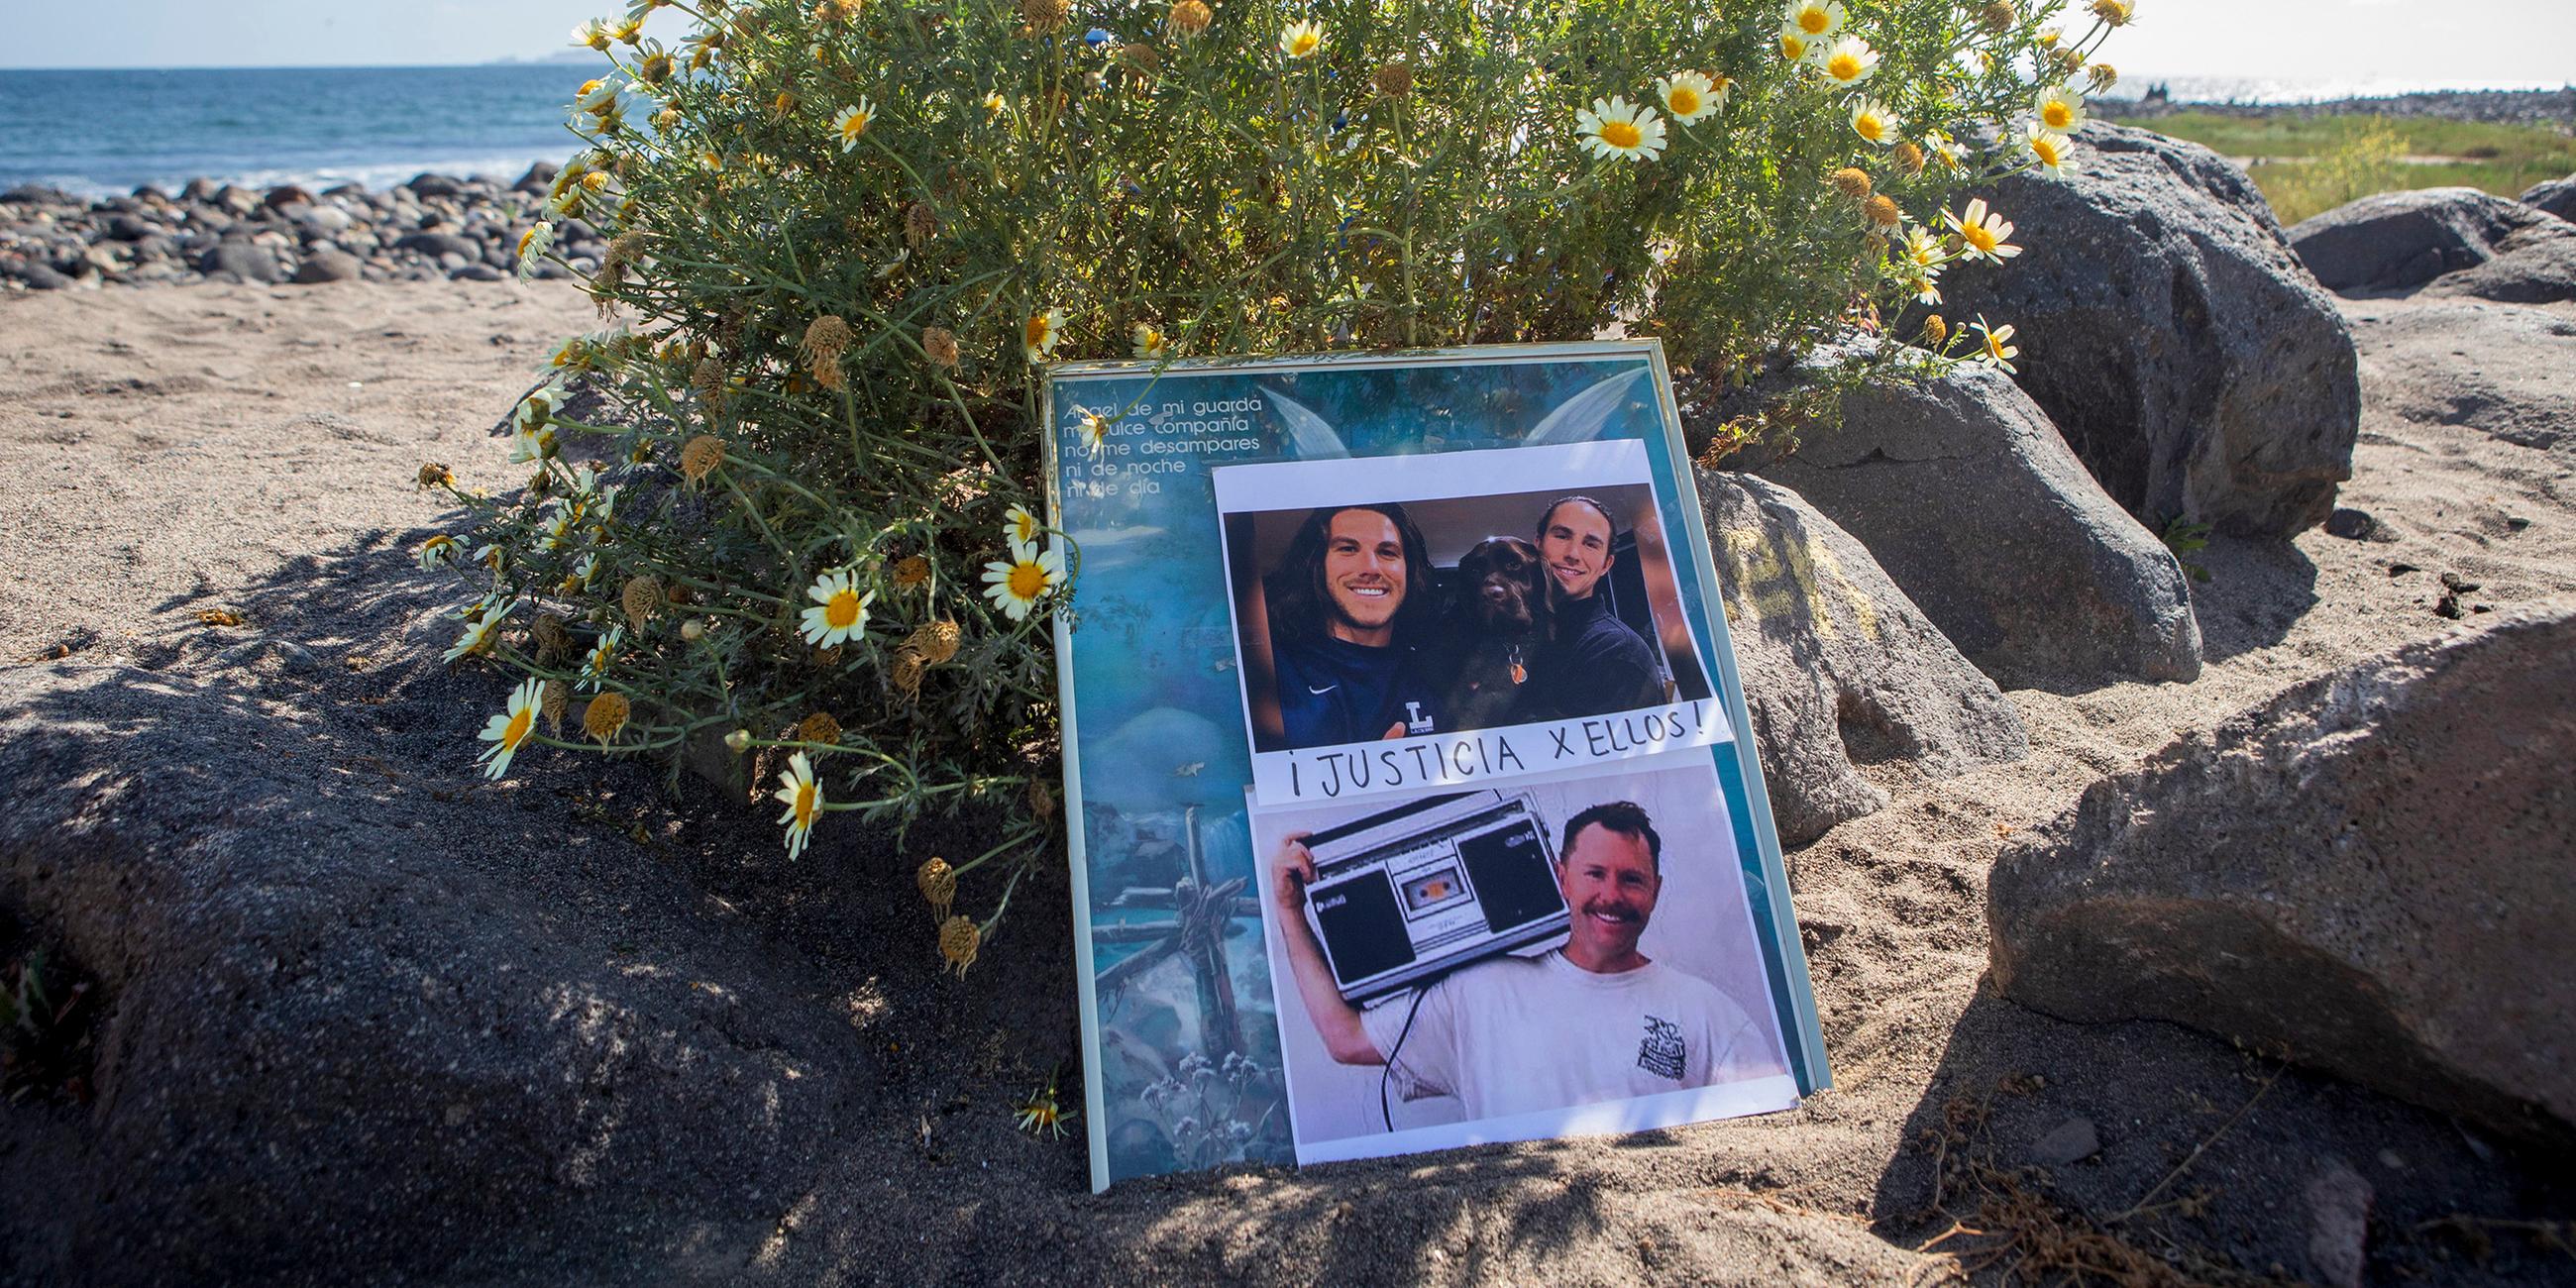 Fotos der verschwundenen ausländischen Surfer am Strand in Ensenada, Mexiko